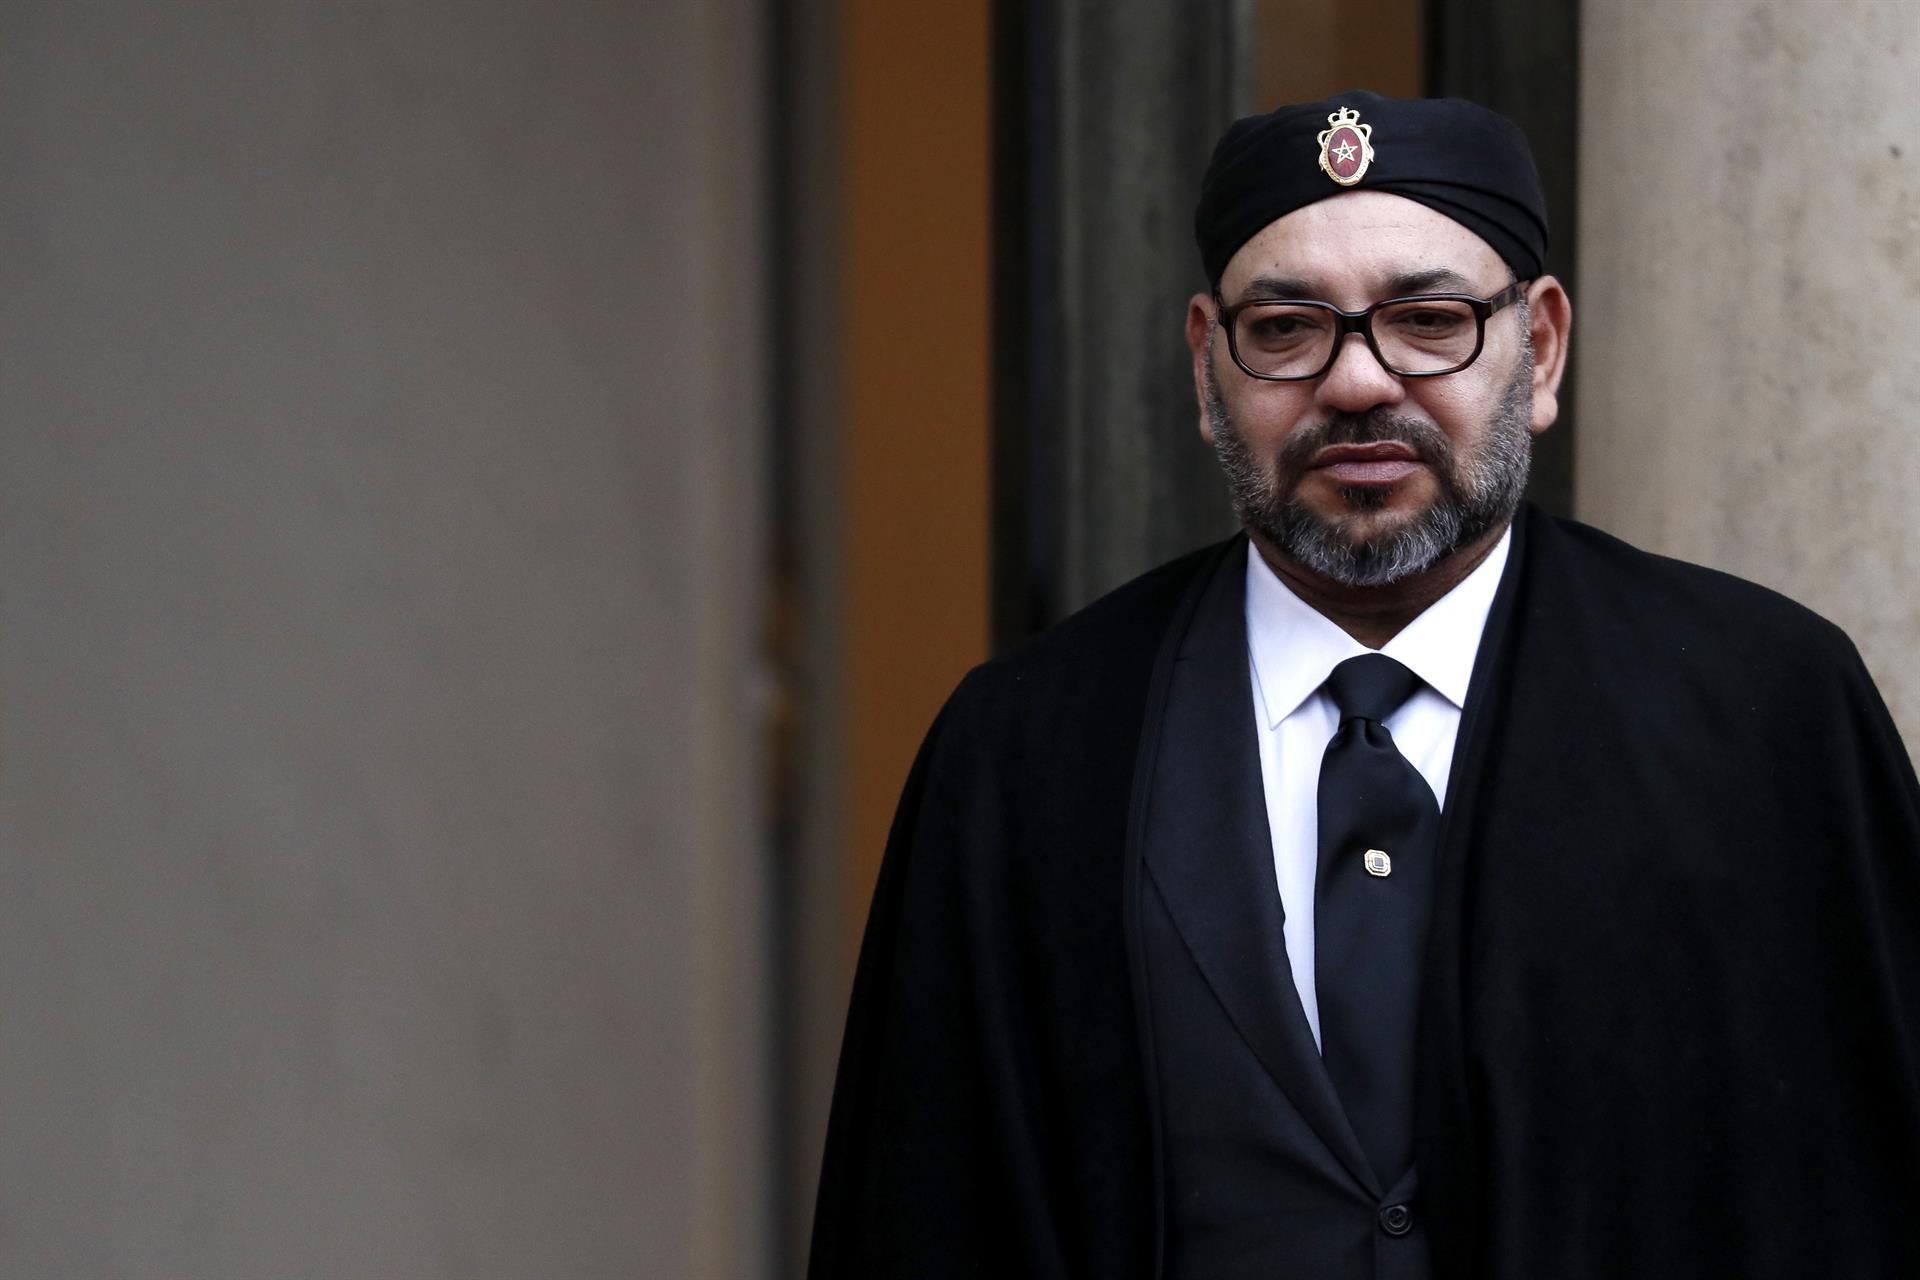 El rey Mohamed VI de Marruecos indultó a 29 condenados por terrorismo tras mostrar arrepentimiento